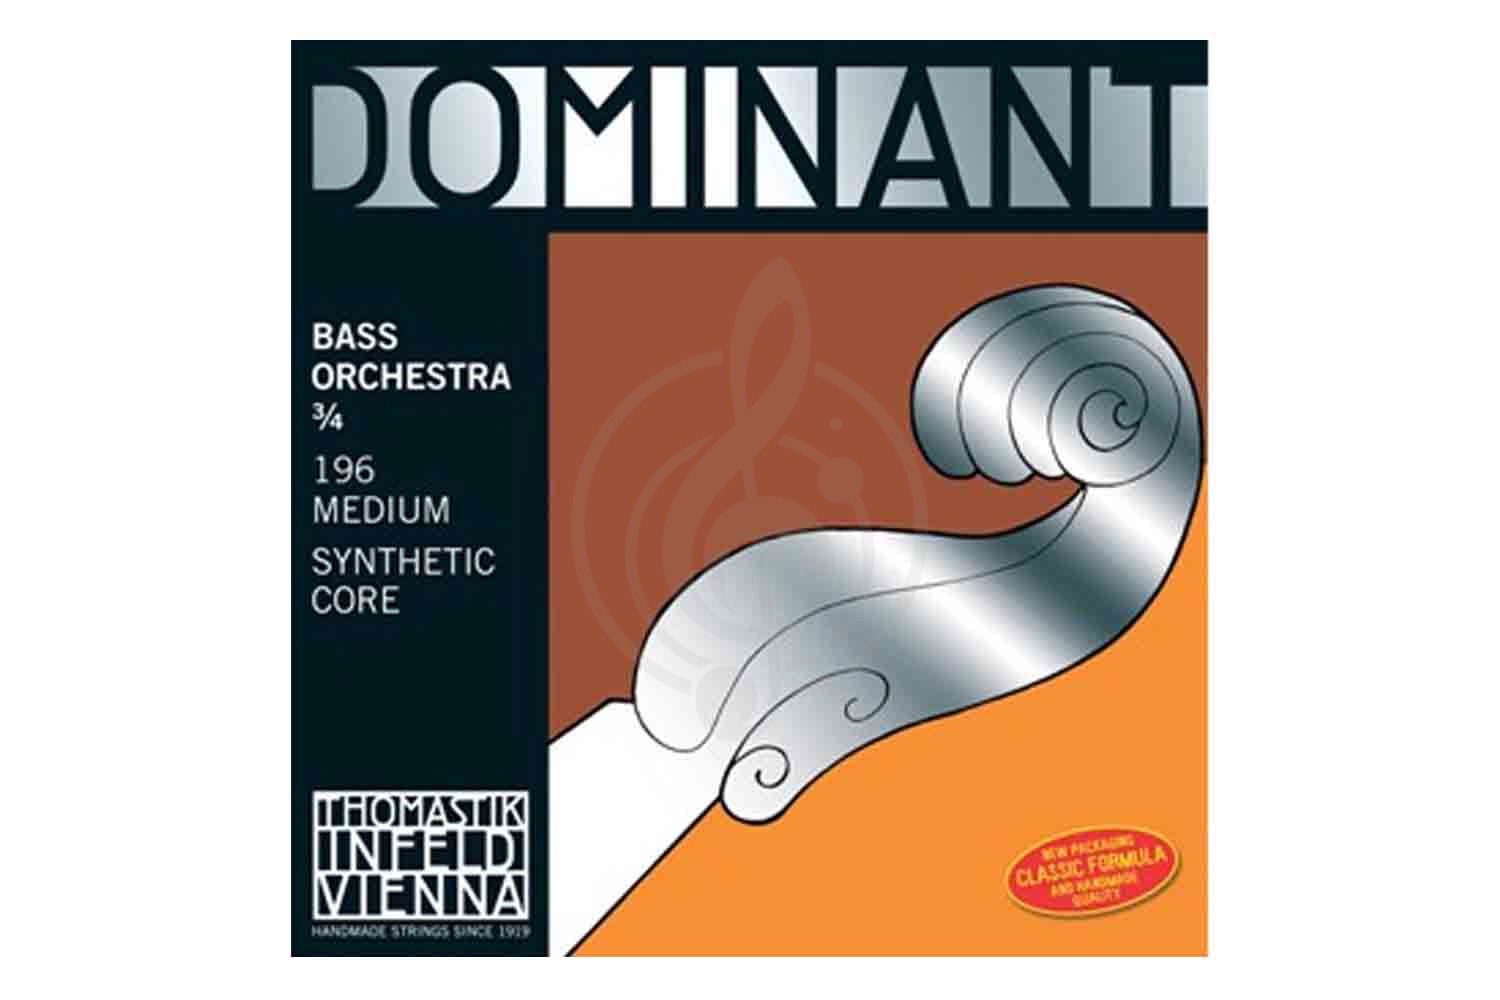 Струны для контрабаса Thomastik 196 Dominant Orchestra - Комплект струн для контрабаса размером 3/4, Thomastik 196 в магазине DominantaMusic - фото 1